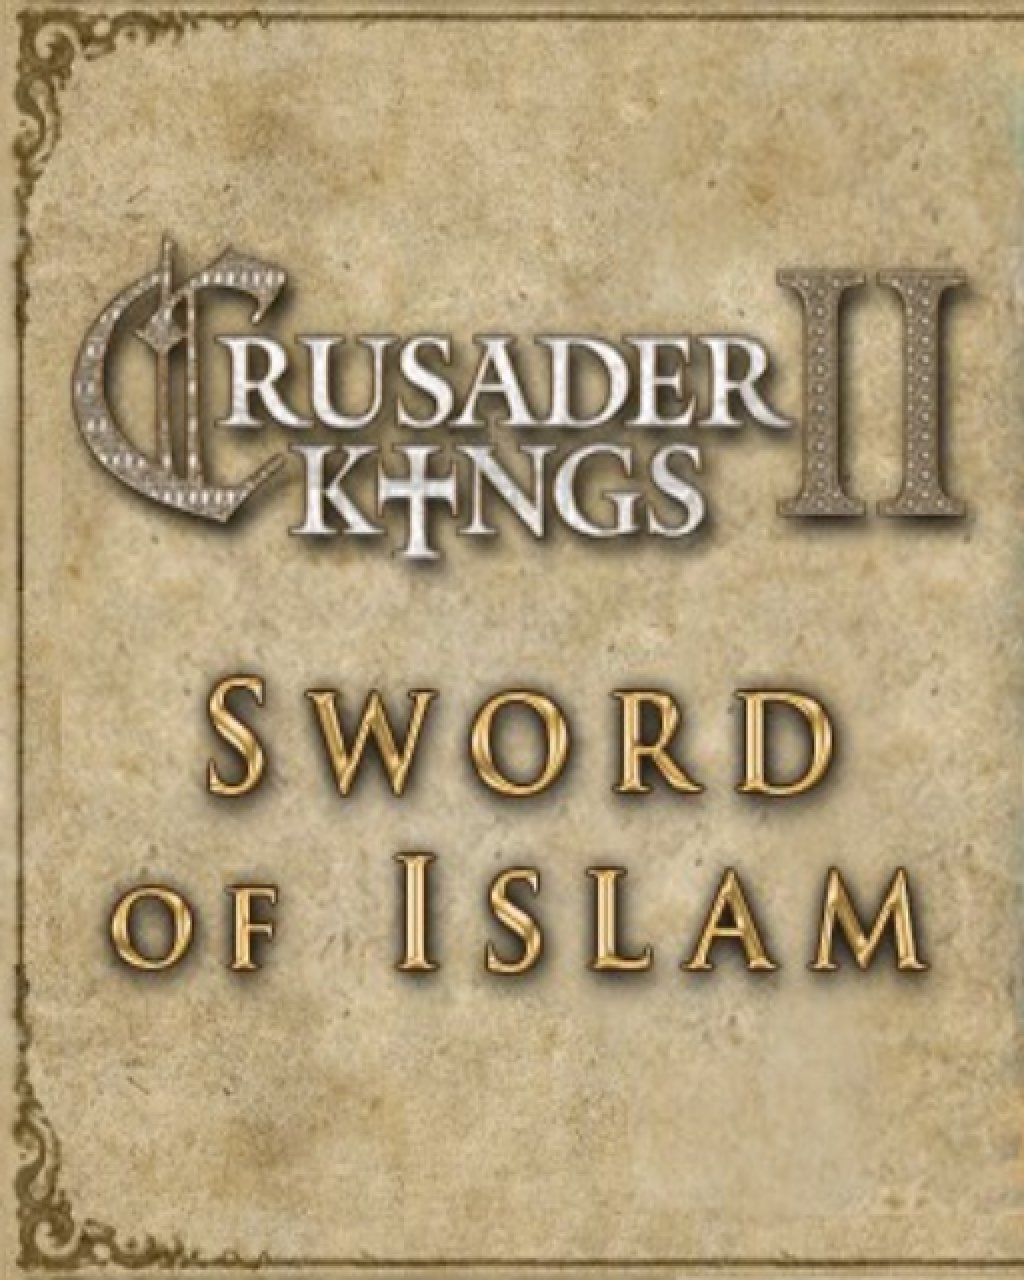 ESD Crusader Kings II Sword of Islam